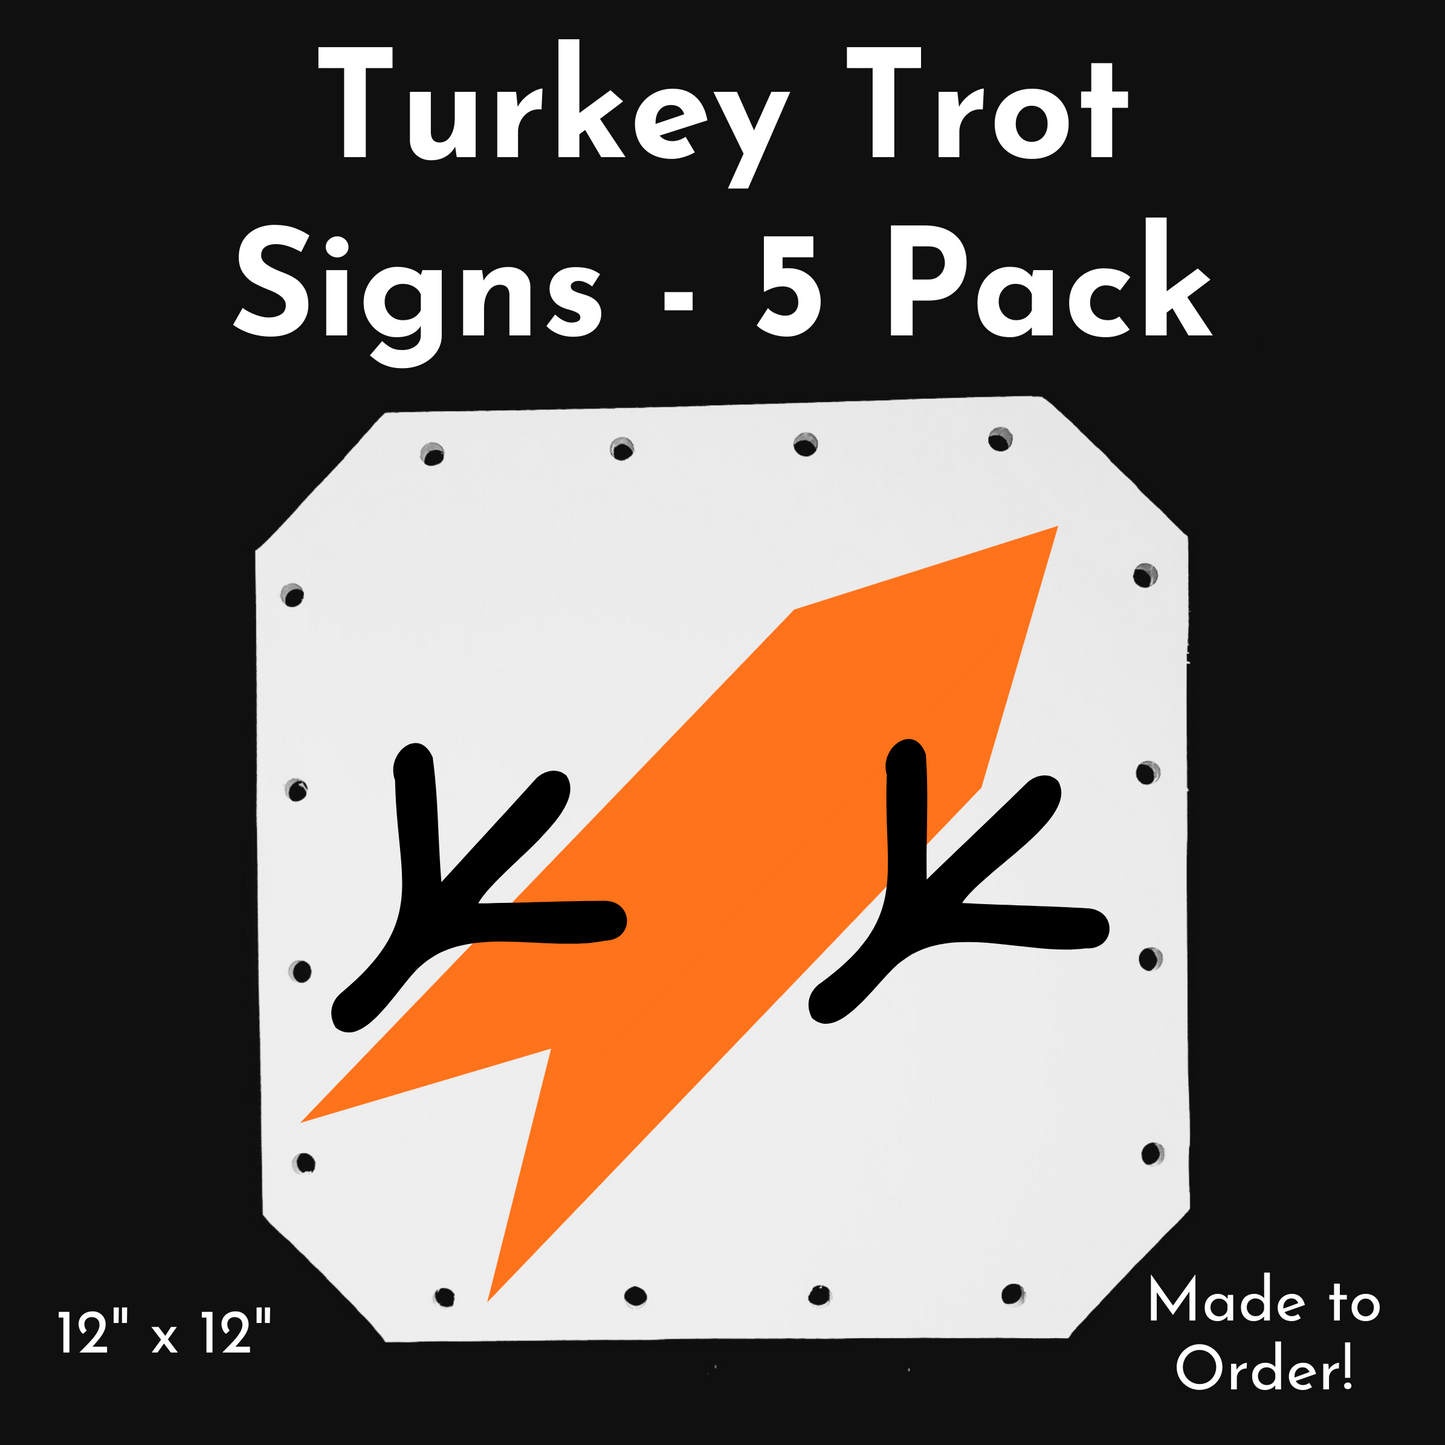 Turkey Trot Footprint Signs (12"x12") - 5 Packs